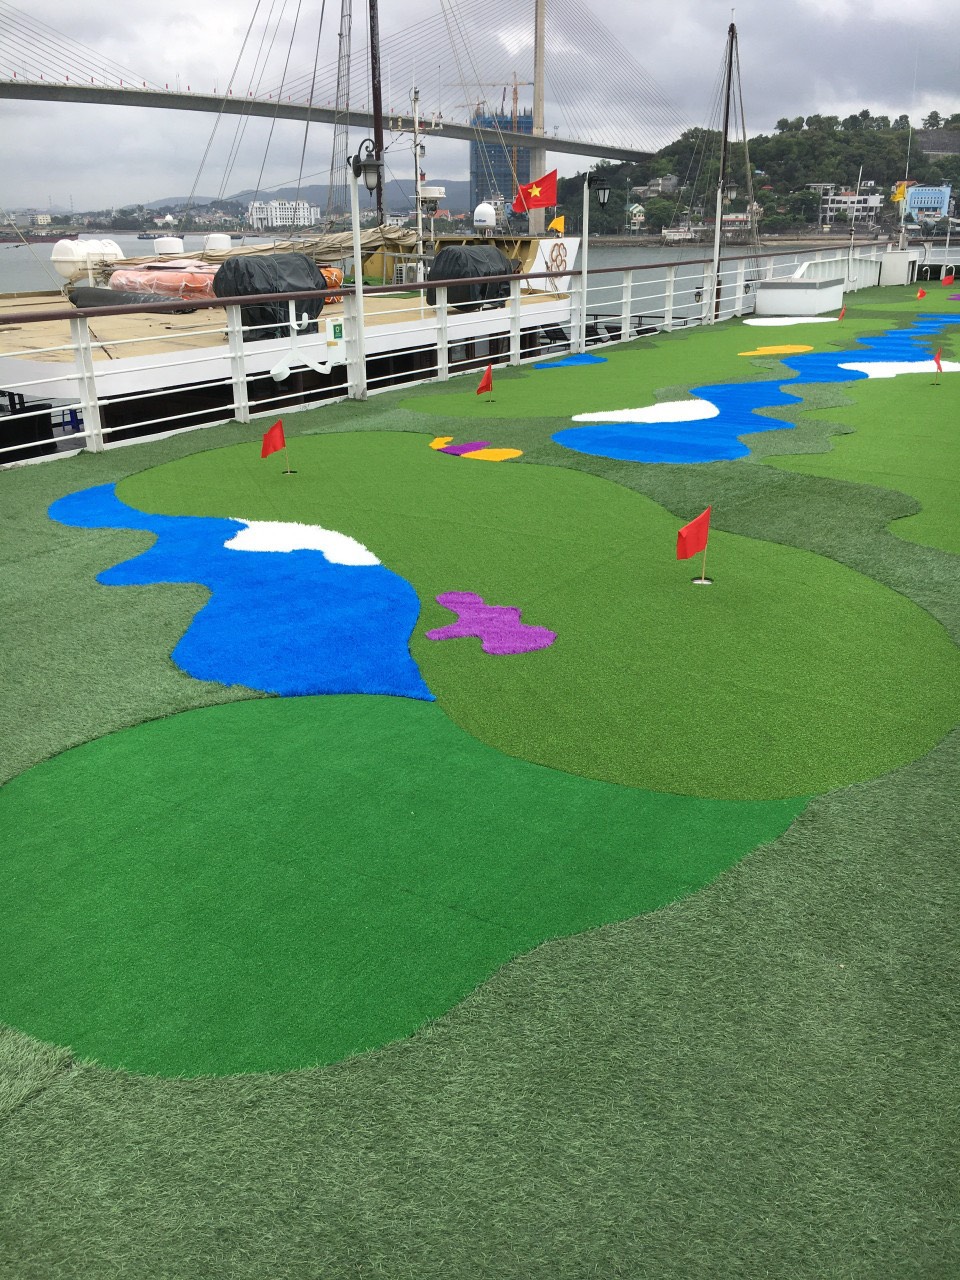 cỏ nhân tạo sân golf